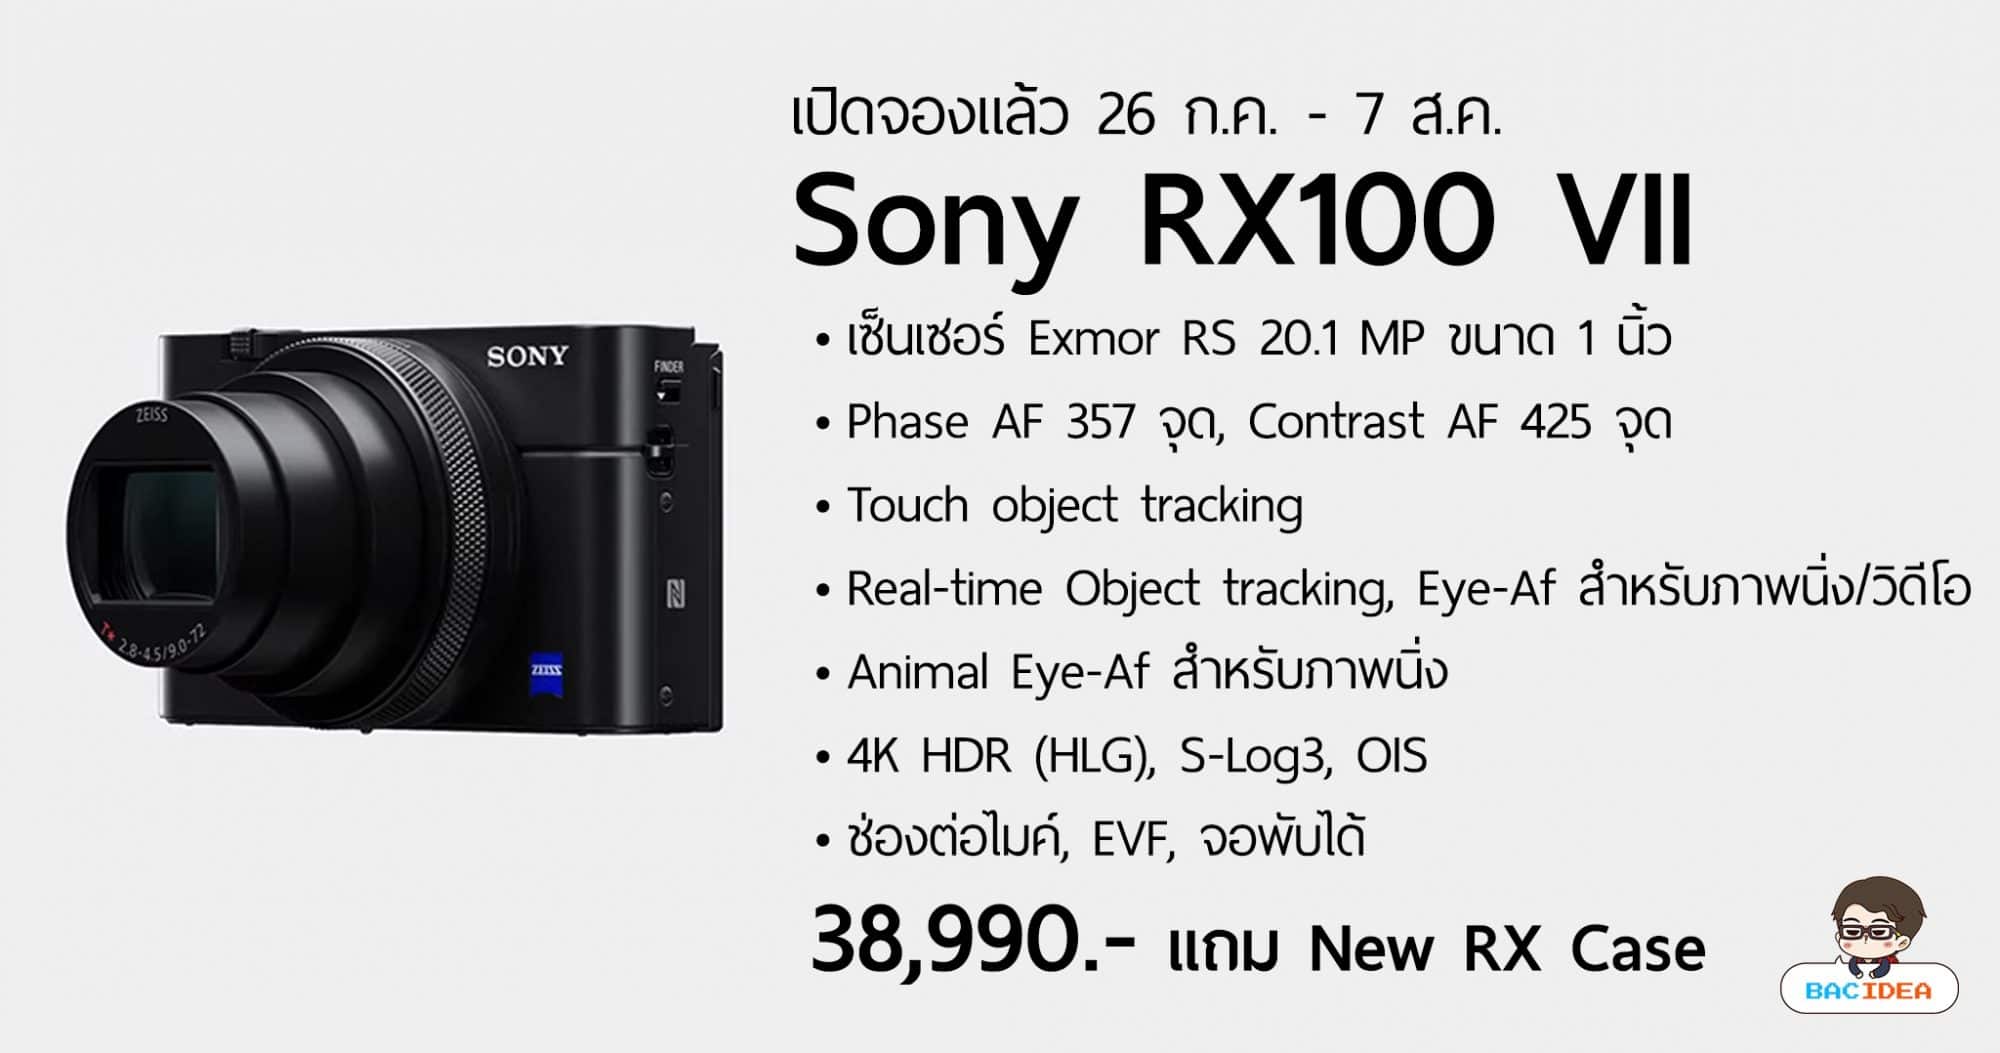 น้องเล็กมีช่องไมค์ Sony เปิดตัว RX100 VII เซ็นเซอร์ใหม่ 20MP มี Eye-AF สำหรับวิดีโอ ราคา 38,990.- 1